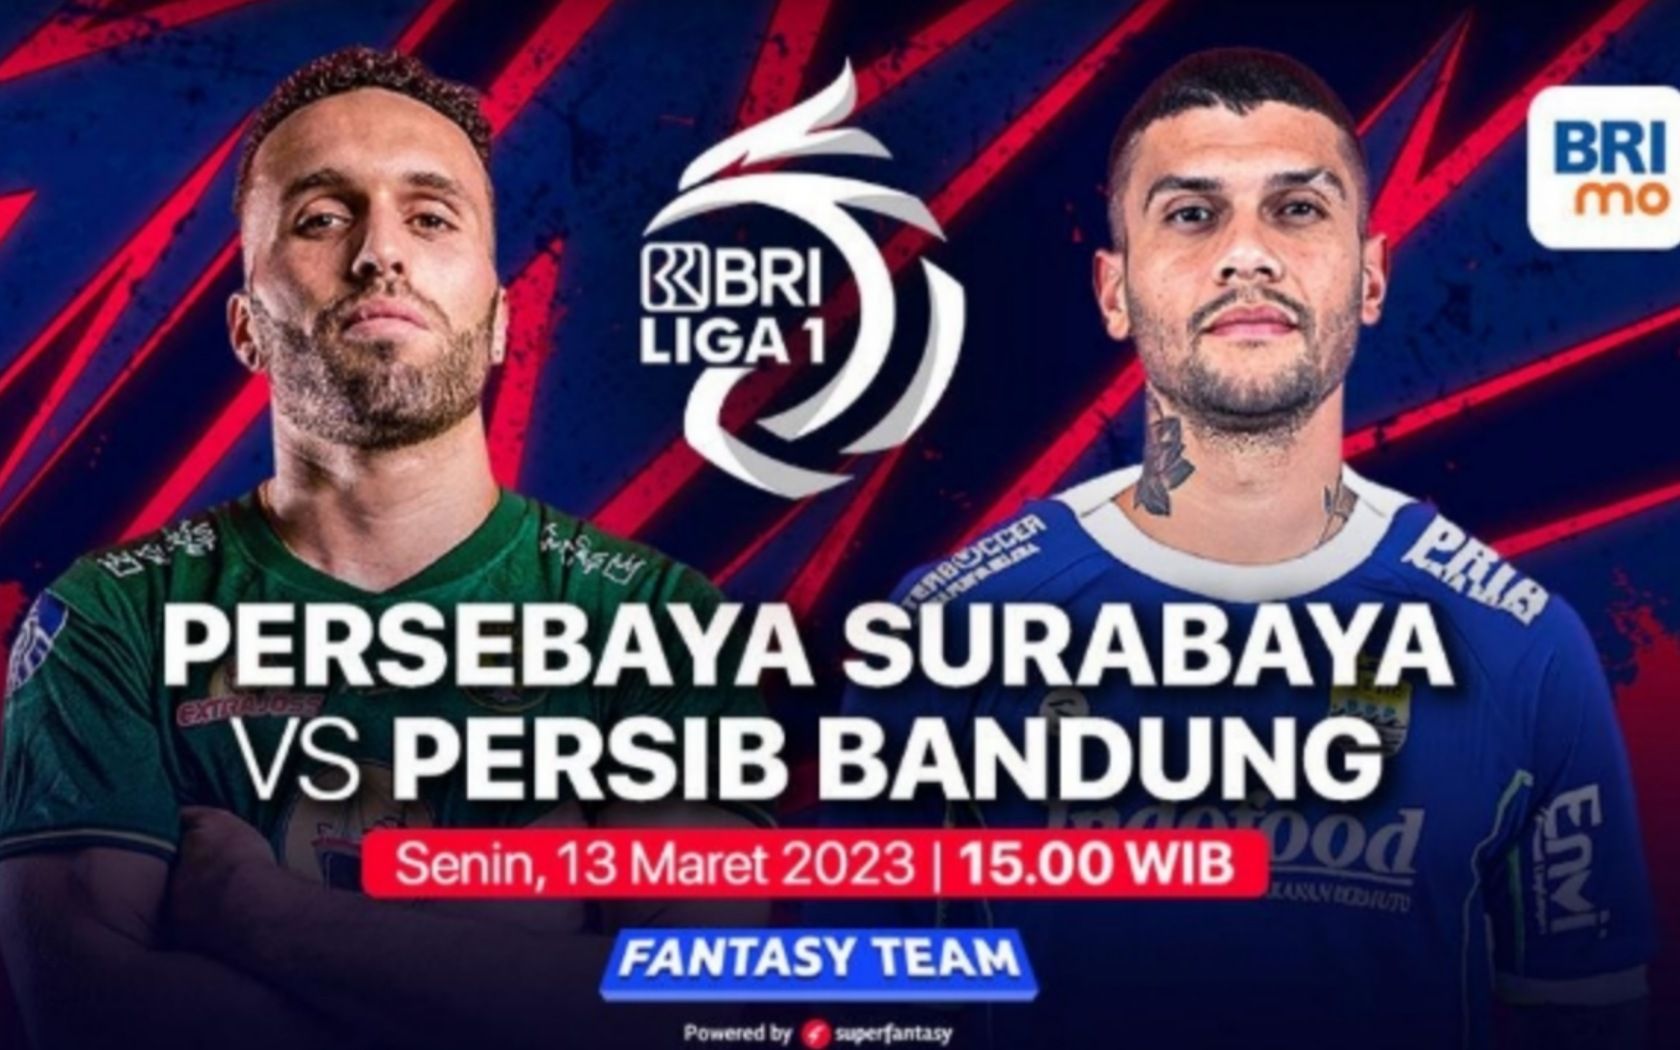 Prediksi formasi susunan pemain Persebaya vs Persib Bandung pertandingan BRI Liga 1 hari ini